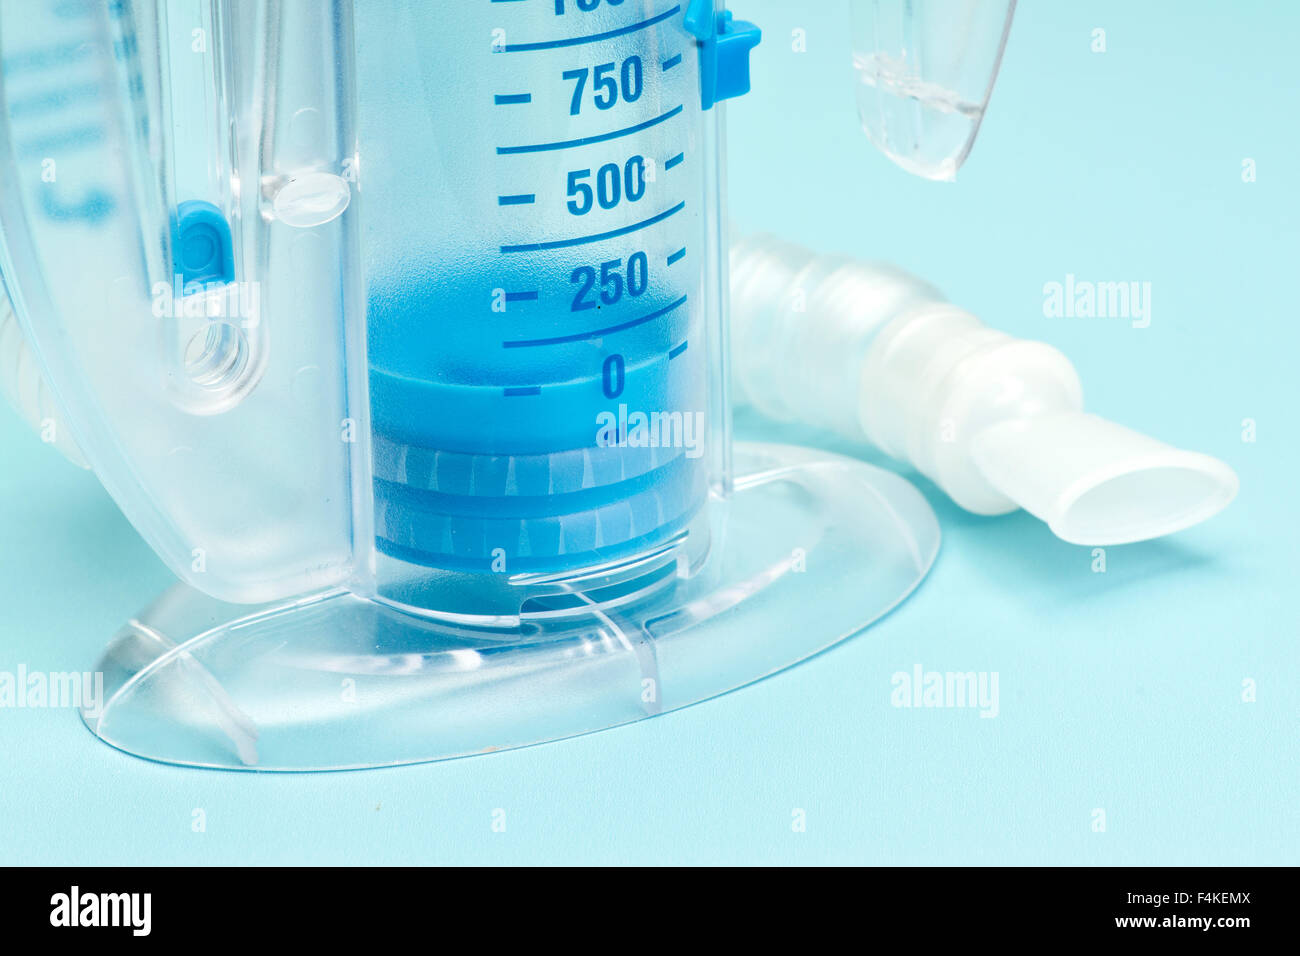 Atemtherapie Patienten Incentive Spirometer. Stockfoto